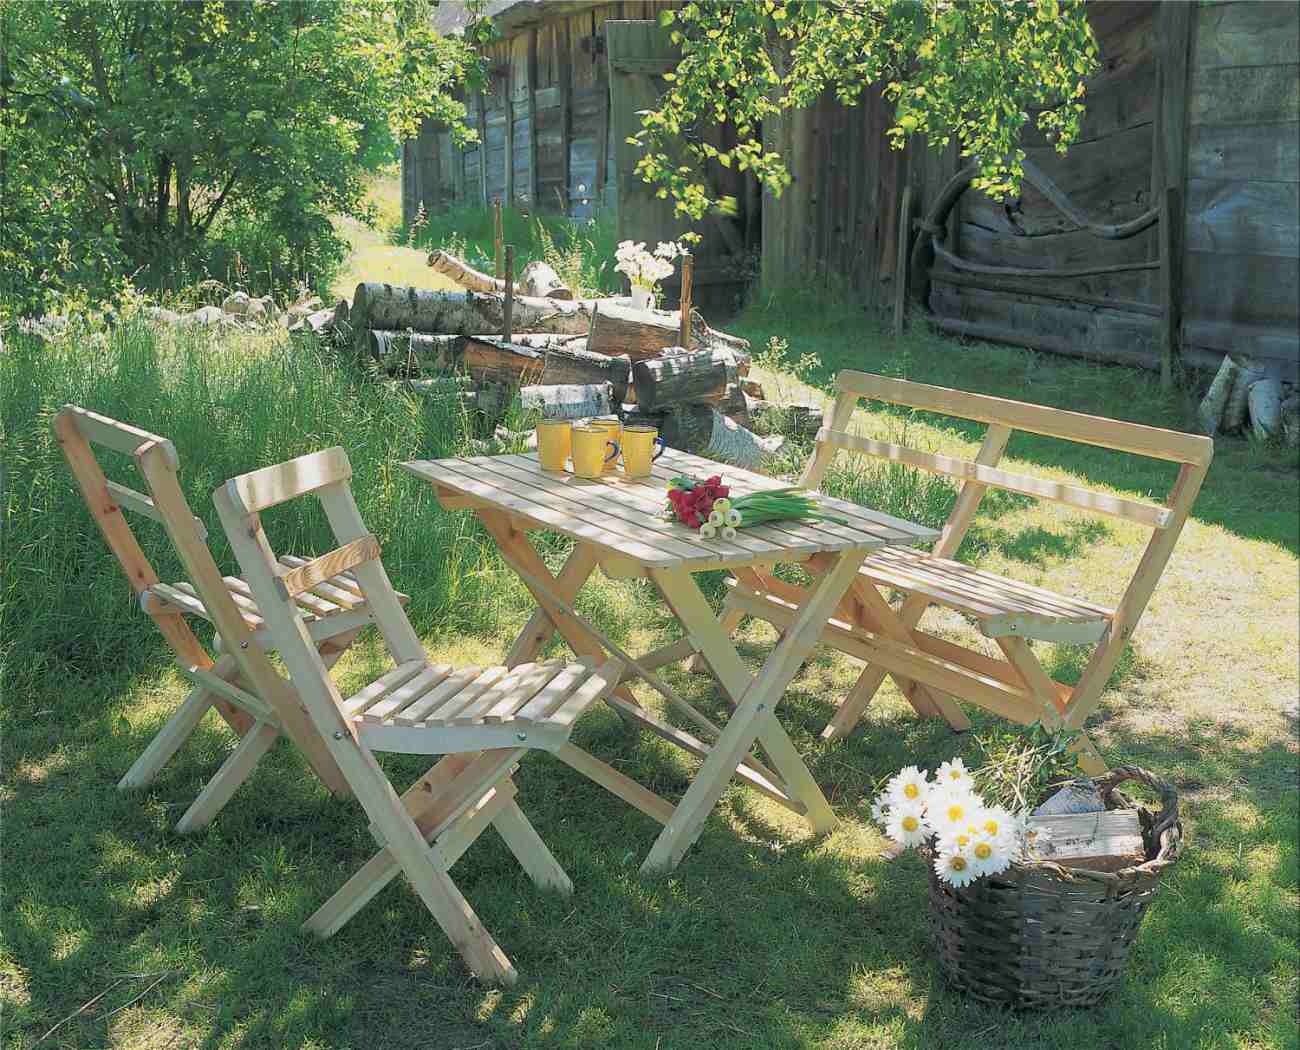 Der Gartenstuhl Gammeldags überzeugt mit seinem modernen Design. Gefertigt wurde er aus Kiefernholz, welches einen natürlichen Farbton besitzt. Das Gestell ist auch aus Kiefernholz und hat eine natürliche Farbe. Die Sitzhöhe des Stuhls beträgt 46 cm.